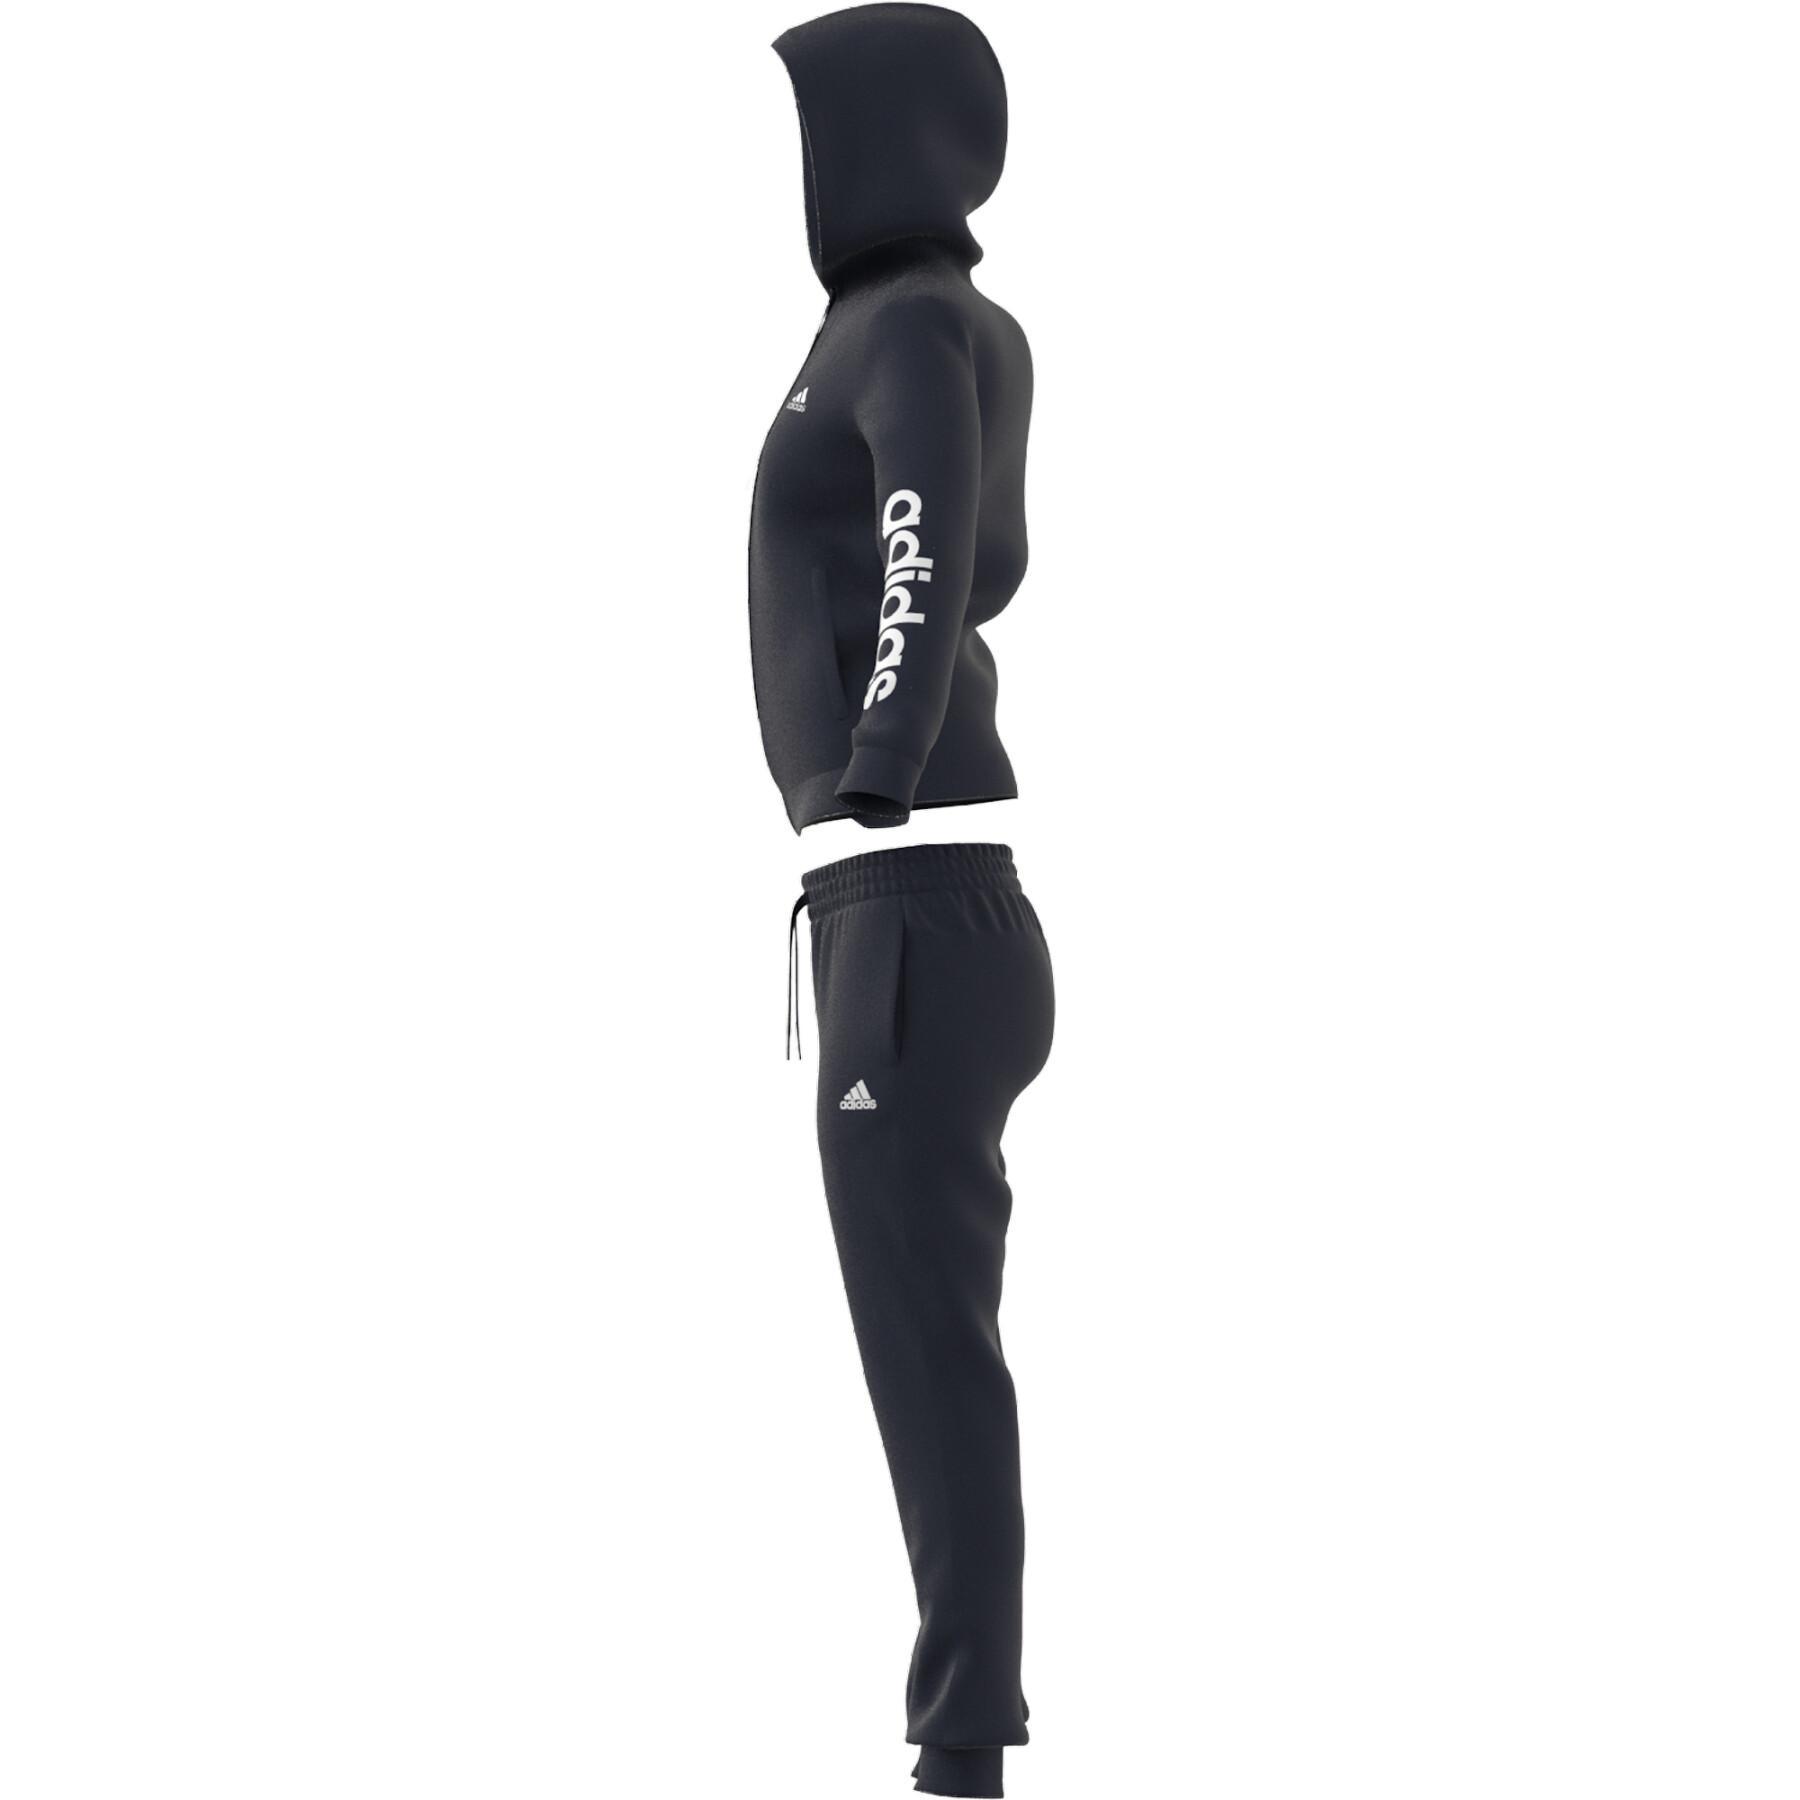 Damen-Trainingsanzug adidas Essentials Logo French und Terry Textilien - Bekleidung - Jacken Trainingsanzüge 